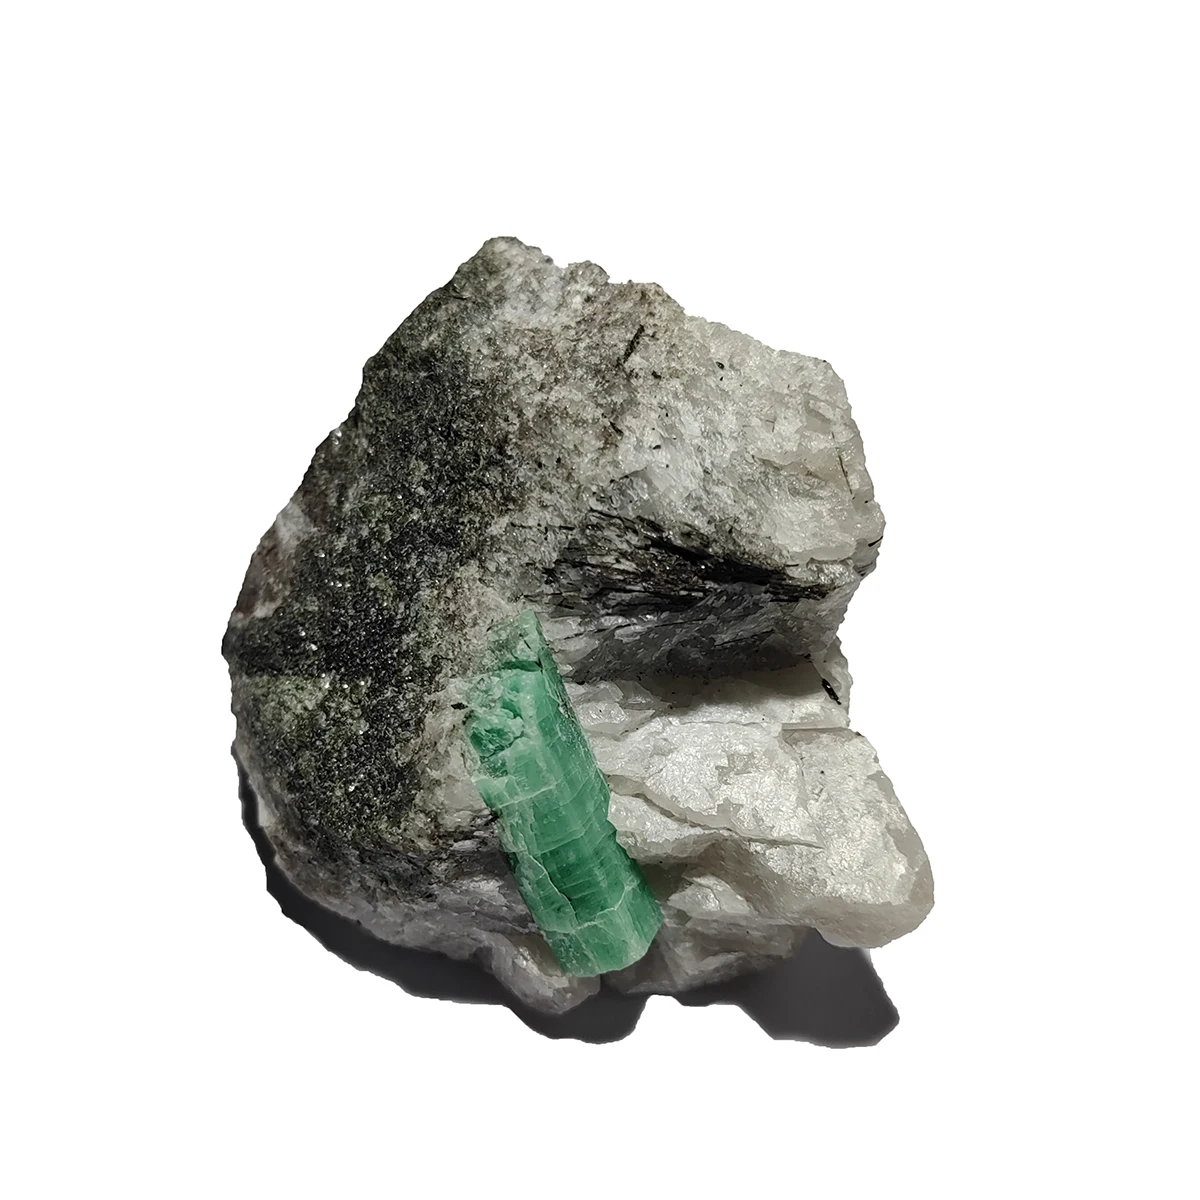 NEW! C5-6A 1PCS 100% Natural Green Emerald Mineral Gem-Grade Crystal Specimens Stones And Crystals Quartz